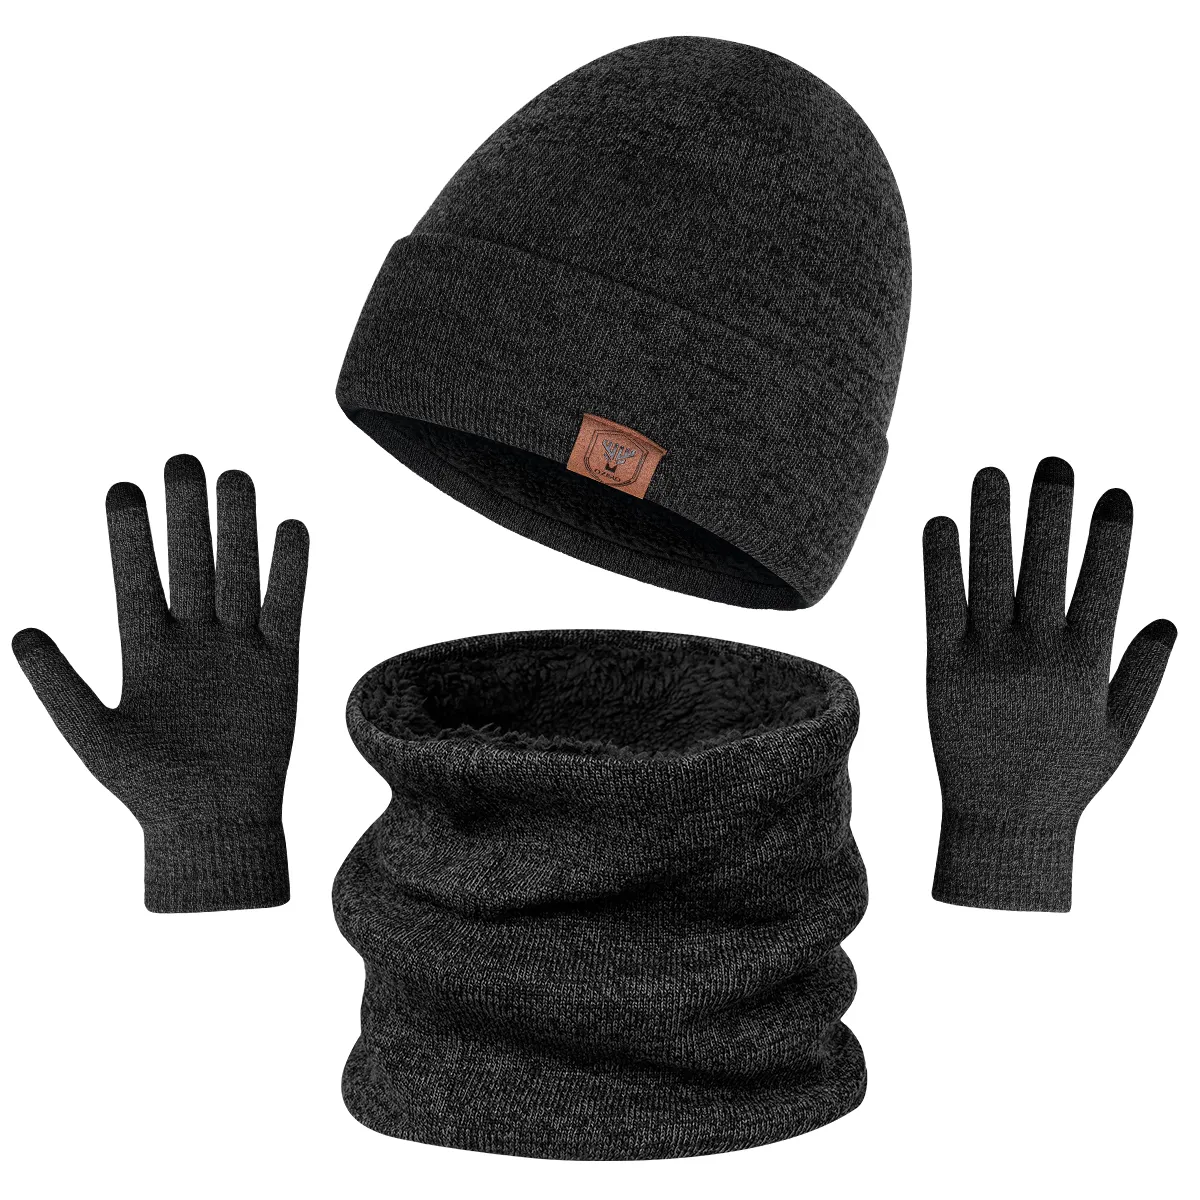 Erkekler için Ozero toptan sıcak kış kalın örme bere ve eşarp örgü şapka ve eldiven setleri